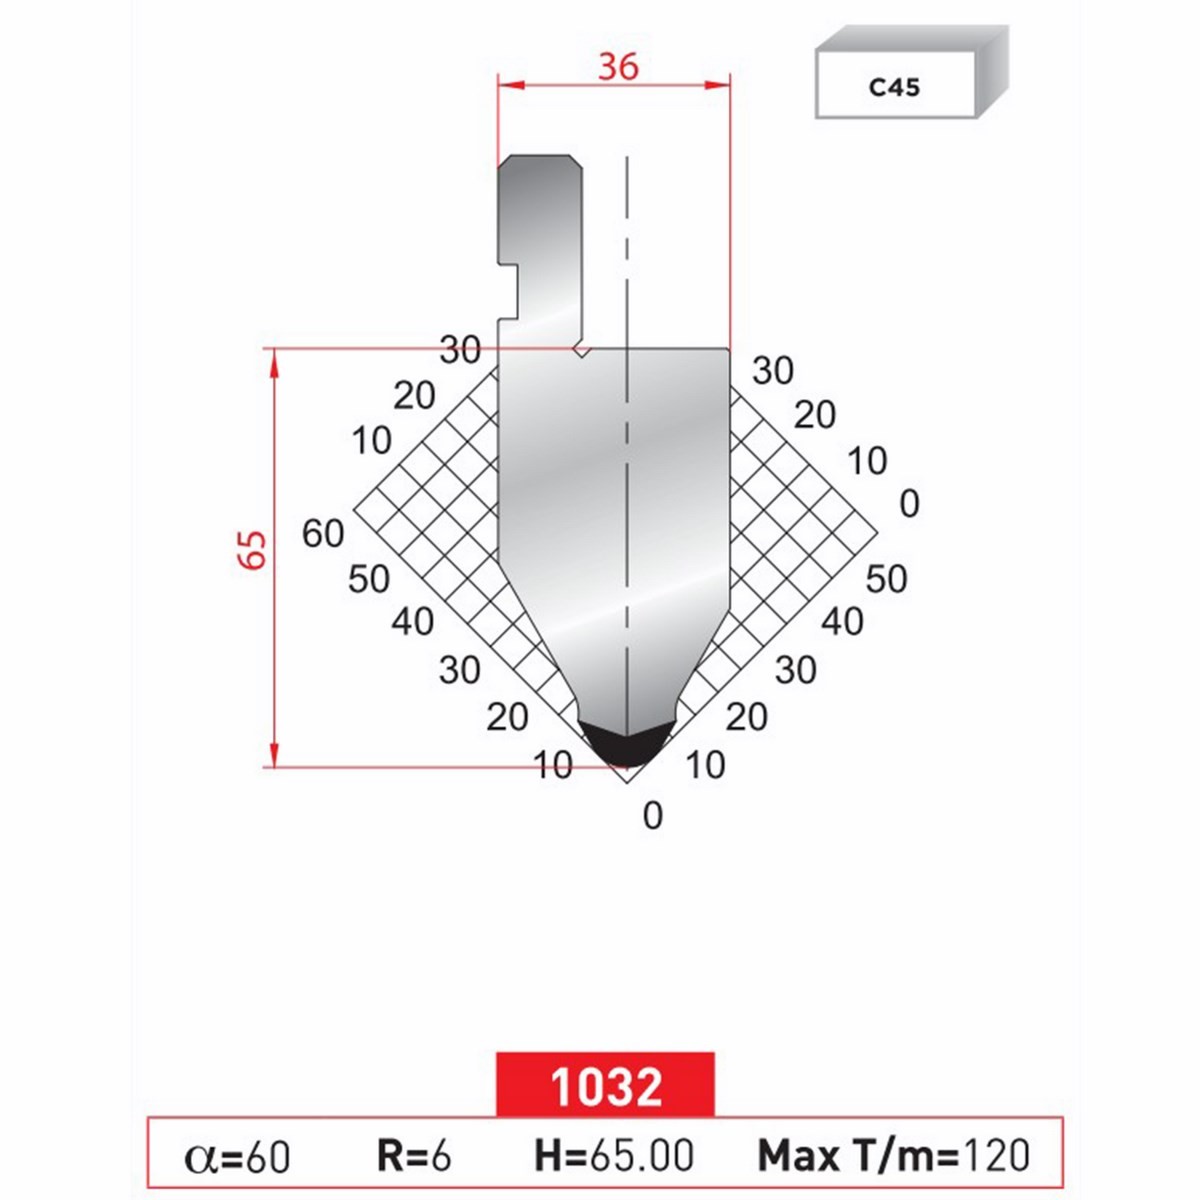 Poinçon 1032 Lg: 805 mm Fractionné